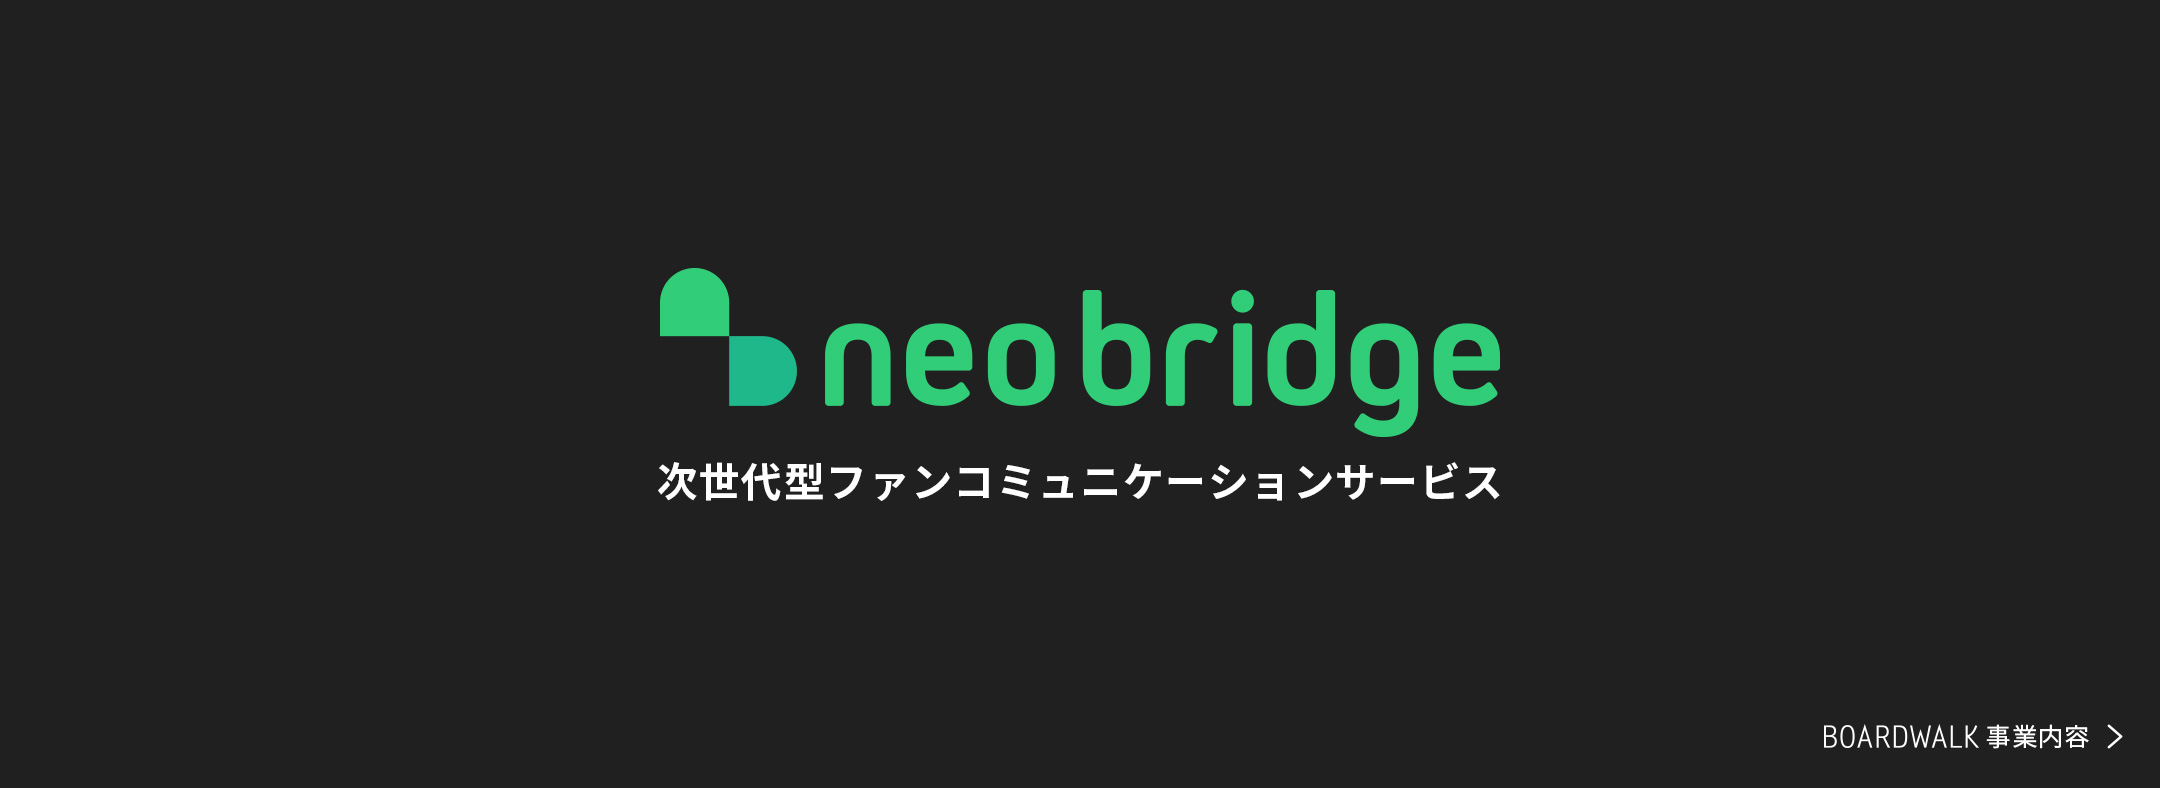 neo bridge